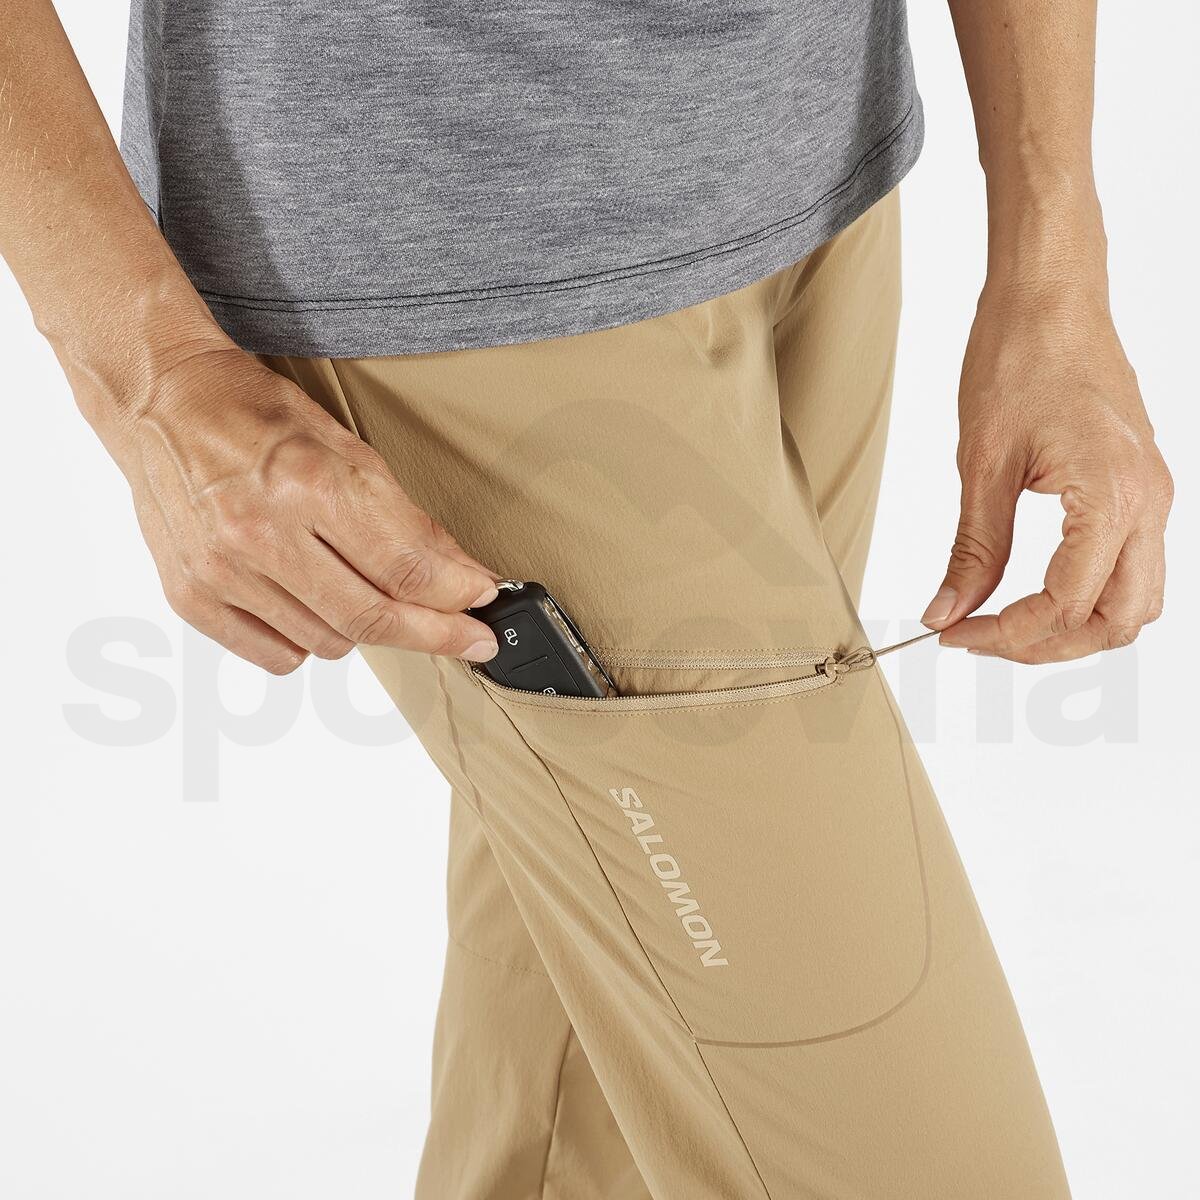 Kalhoty Salomon Wayfarer Pants W - hnědá (standardní délka)